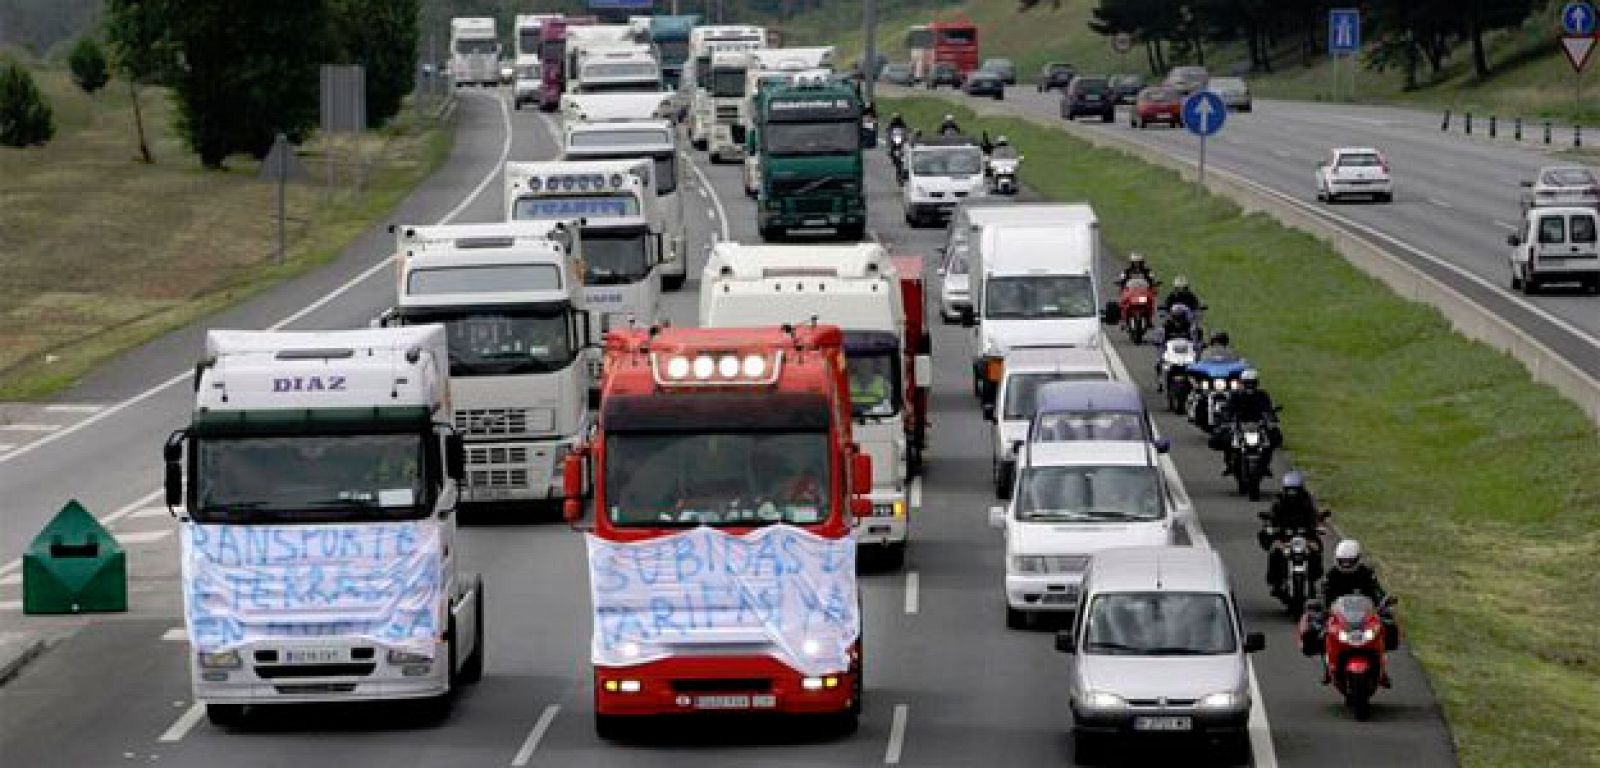 Marcha lenta de camiones en la autopista C58, en el área metropolitana de Barcelona, con motivo de la huelga convocada en junio de 2008